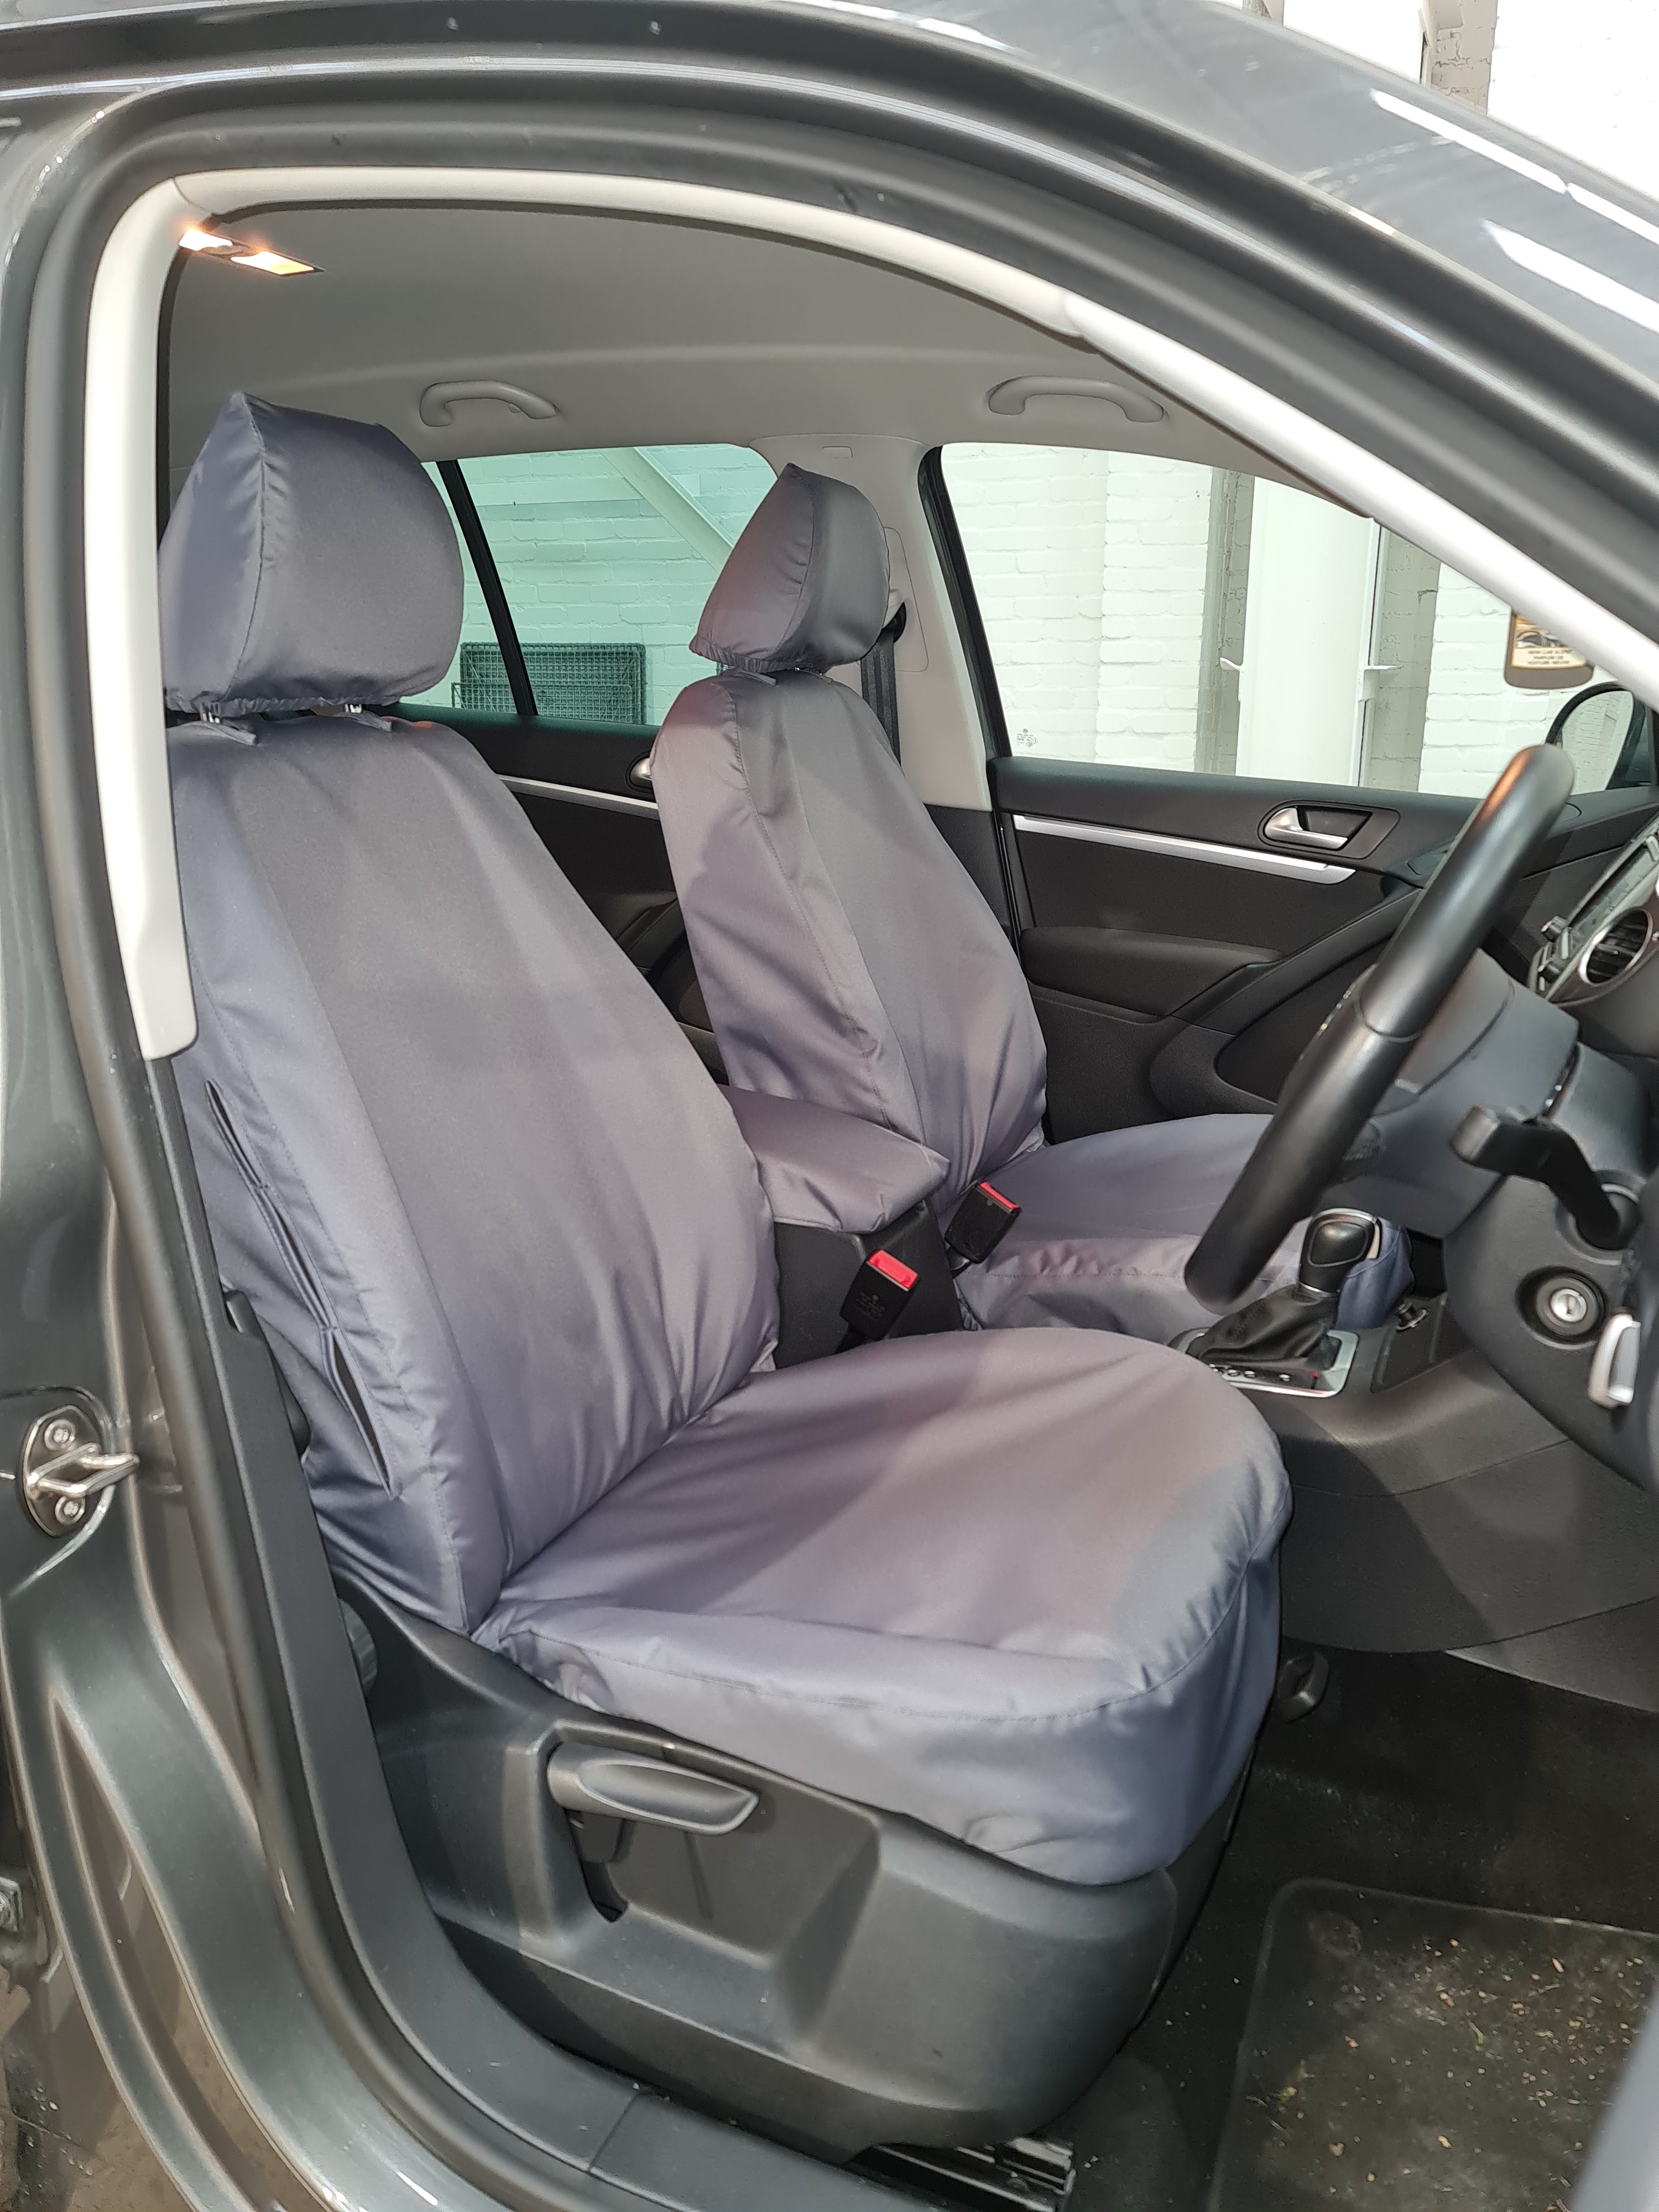 VW Volkswagen Tiguan 2007-2016 Seat Covers